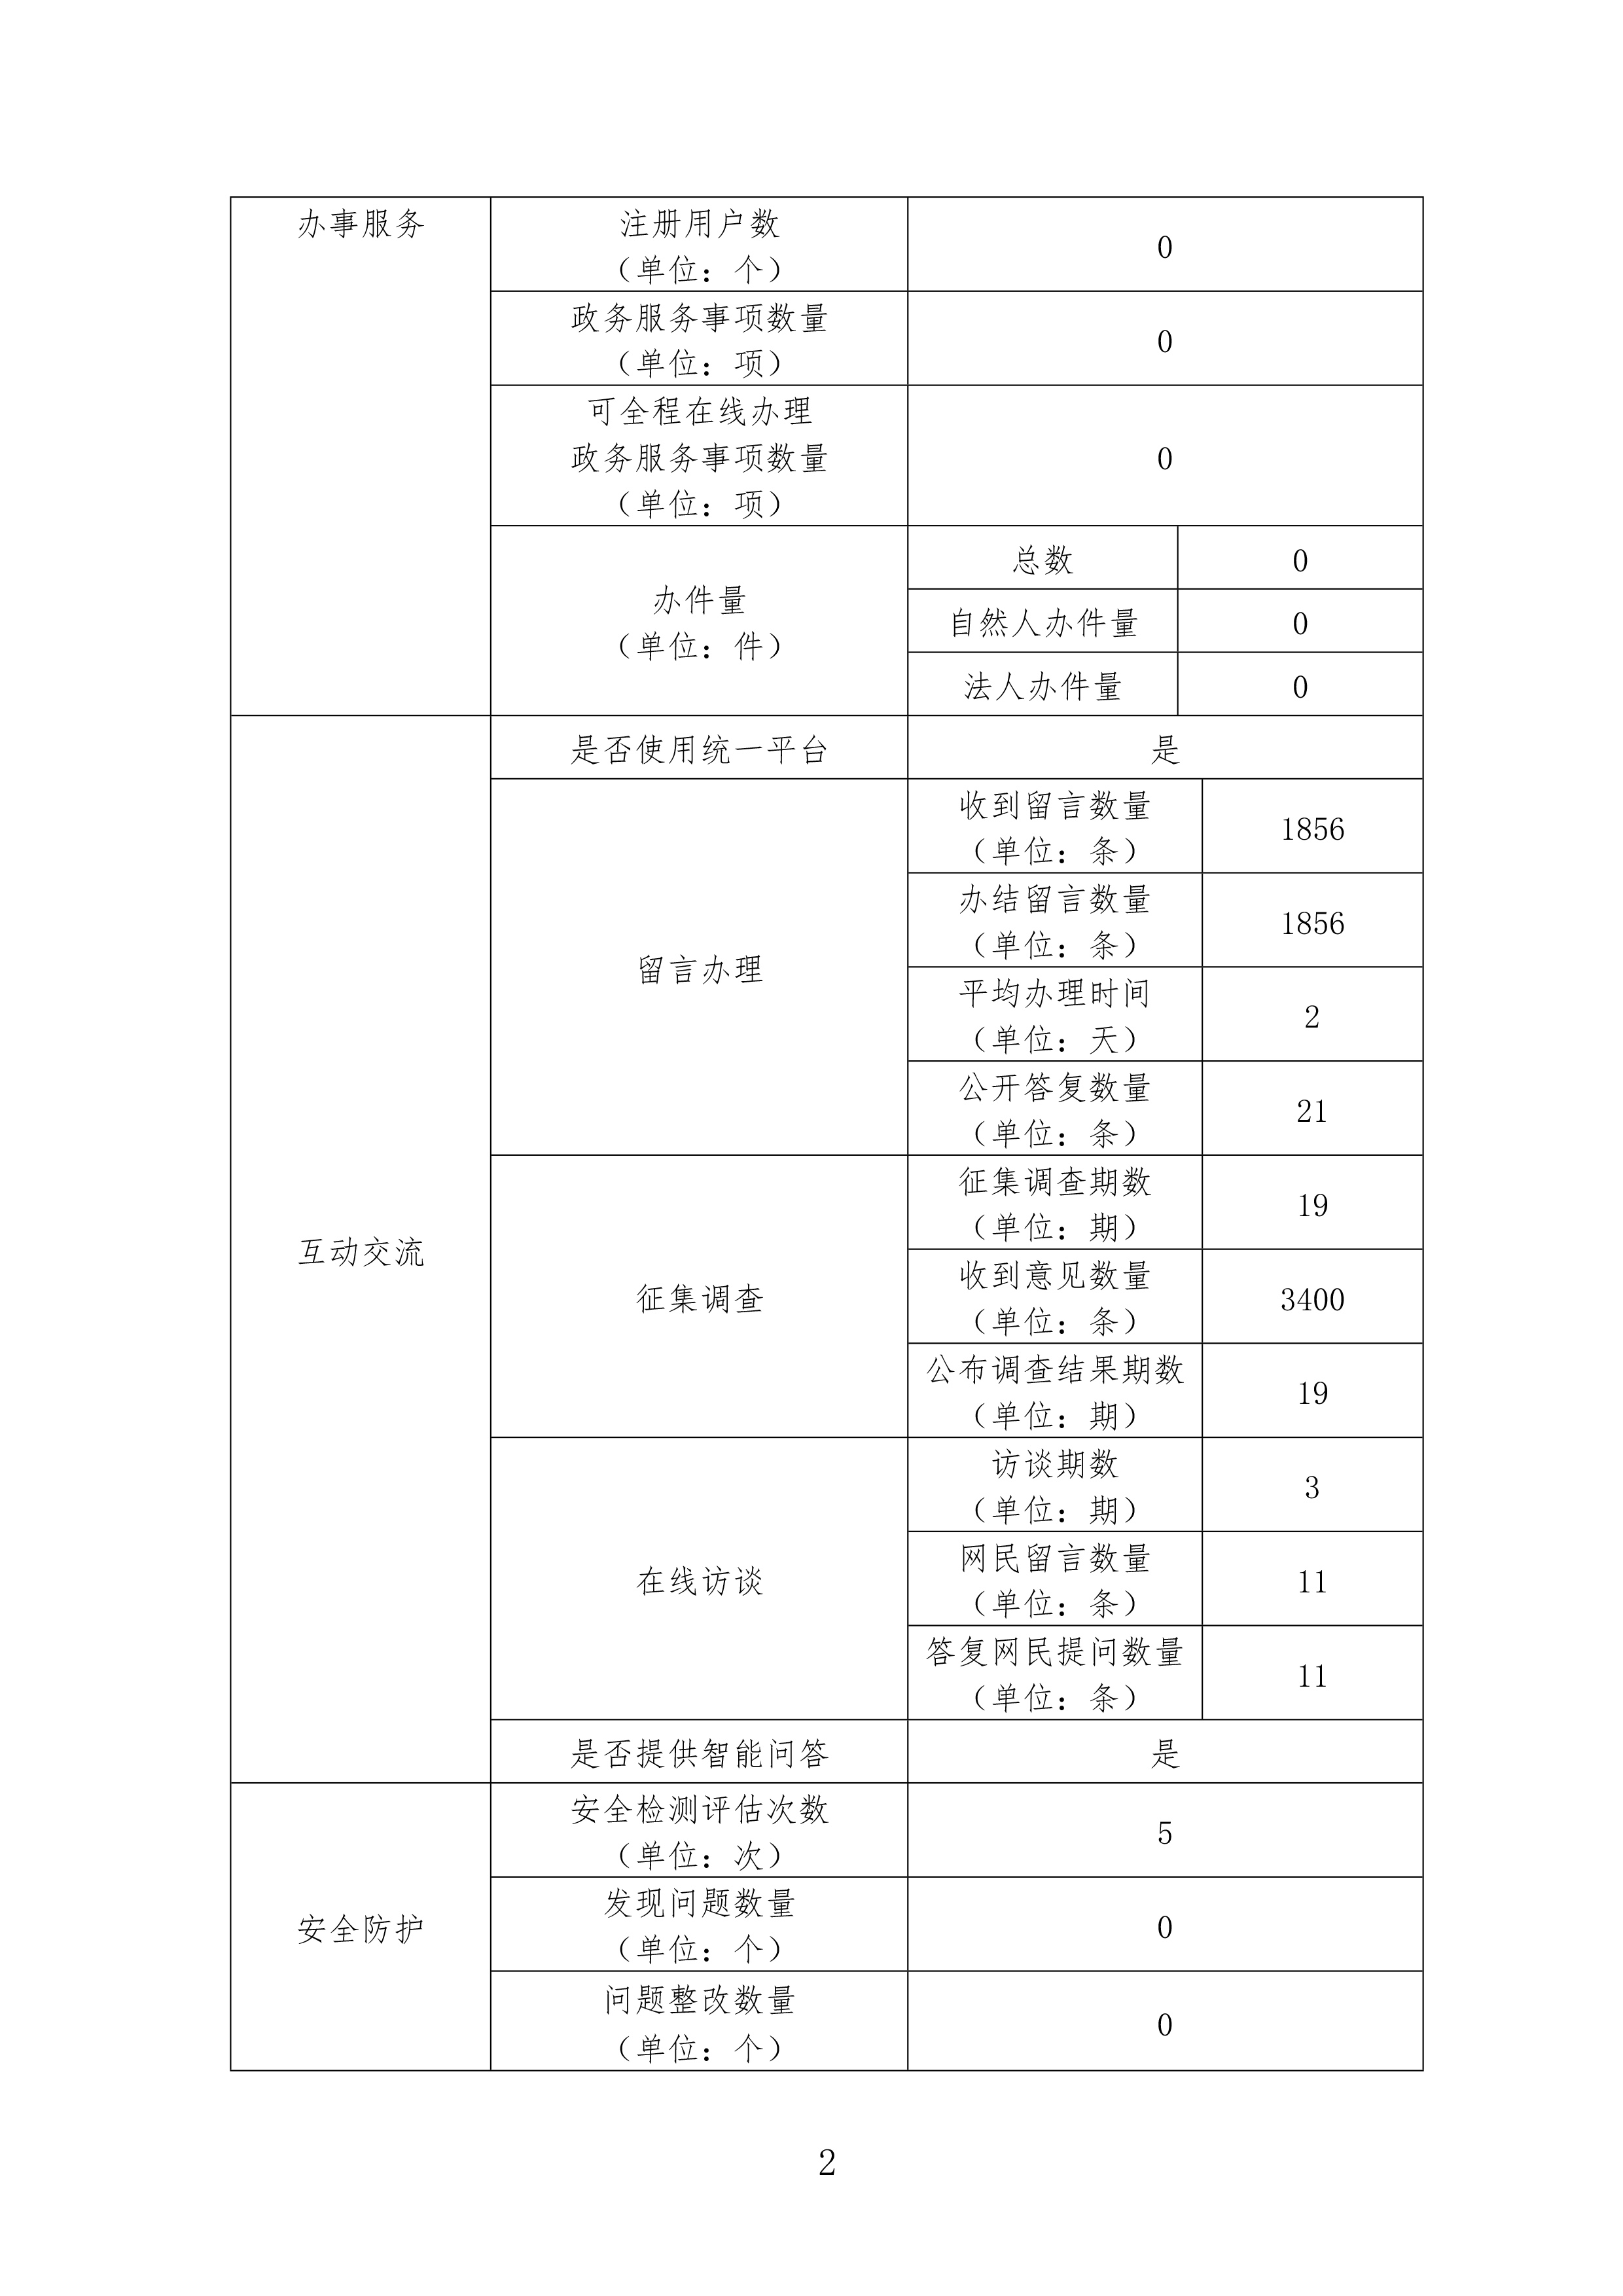 广东省医疗保障局政府网站年度工作报表-2.jpg